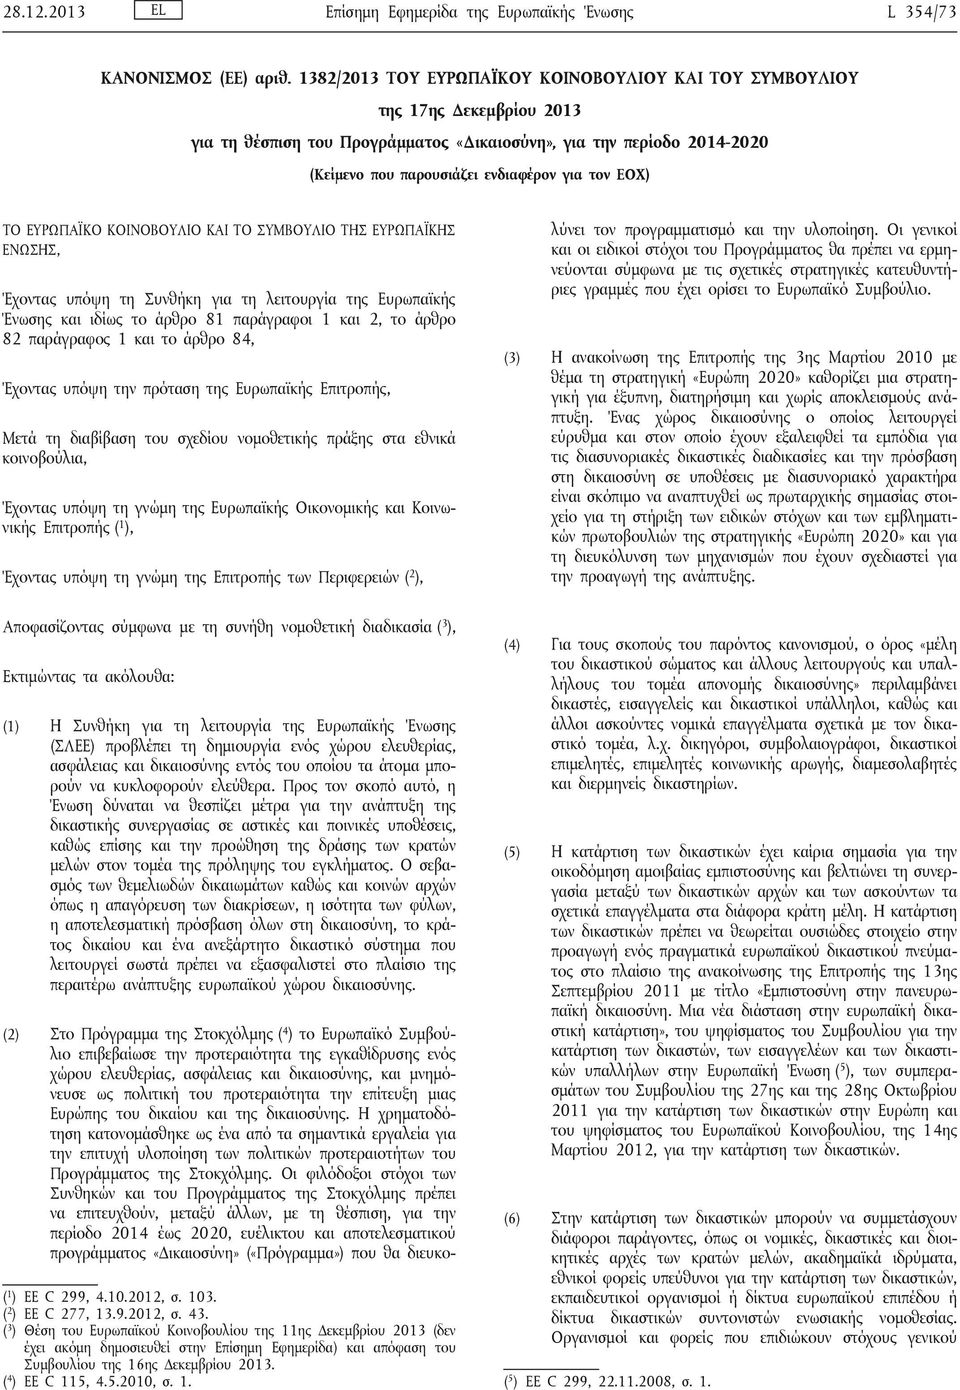 ΕΟΧ) ΤΟ ΕΥΡΩΠΑΪΚΟ ΚΟΙΝΟΒΟΥΛΙΟ ΚΑΙ ΤΟ ΣΥΜΒΟΥΛΙΟ ΤΗΣ ΕΥΡΩΠΑΪΚΗΣ ΕΝΩΣΗΣ, Έχοντας υπόψη τη Συνθήκη για τη λειτουργία της Ευρωπαϊκής Ένωσης και ιδίως το άρθρο 81 παράγραφοι 1 και 2, το άρθρο 82 παράγραφος